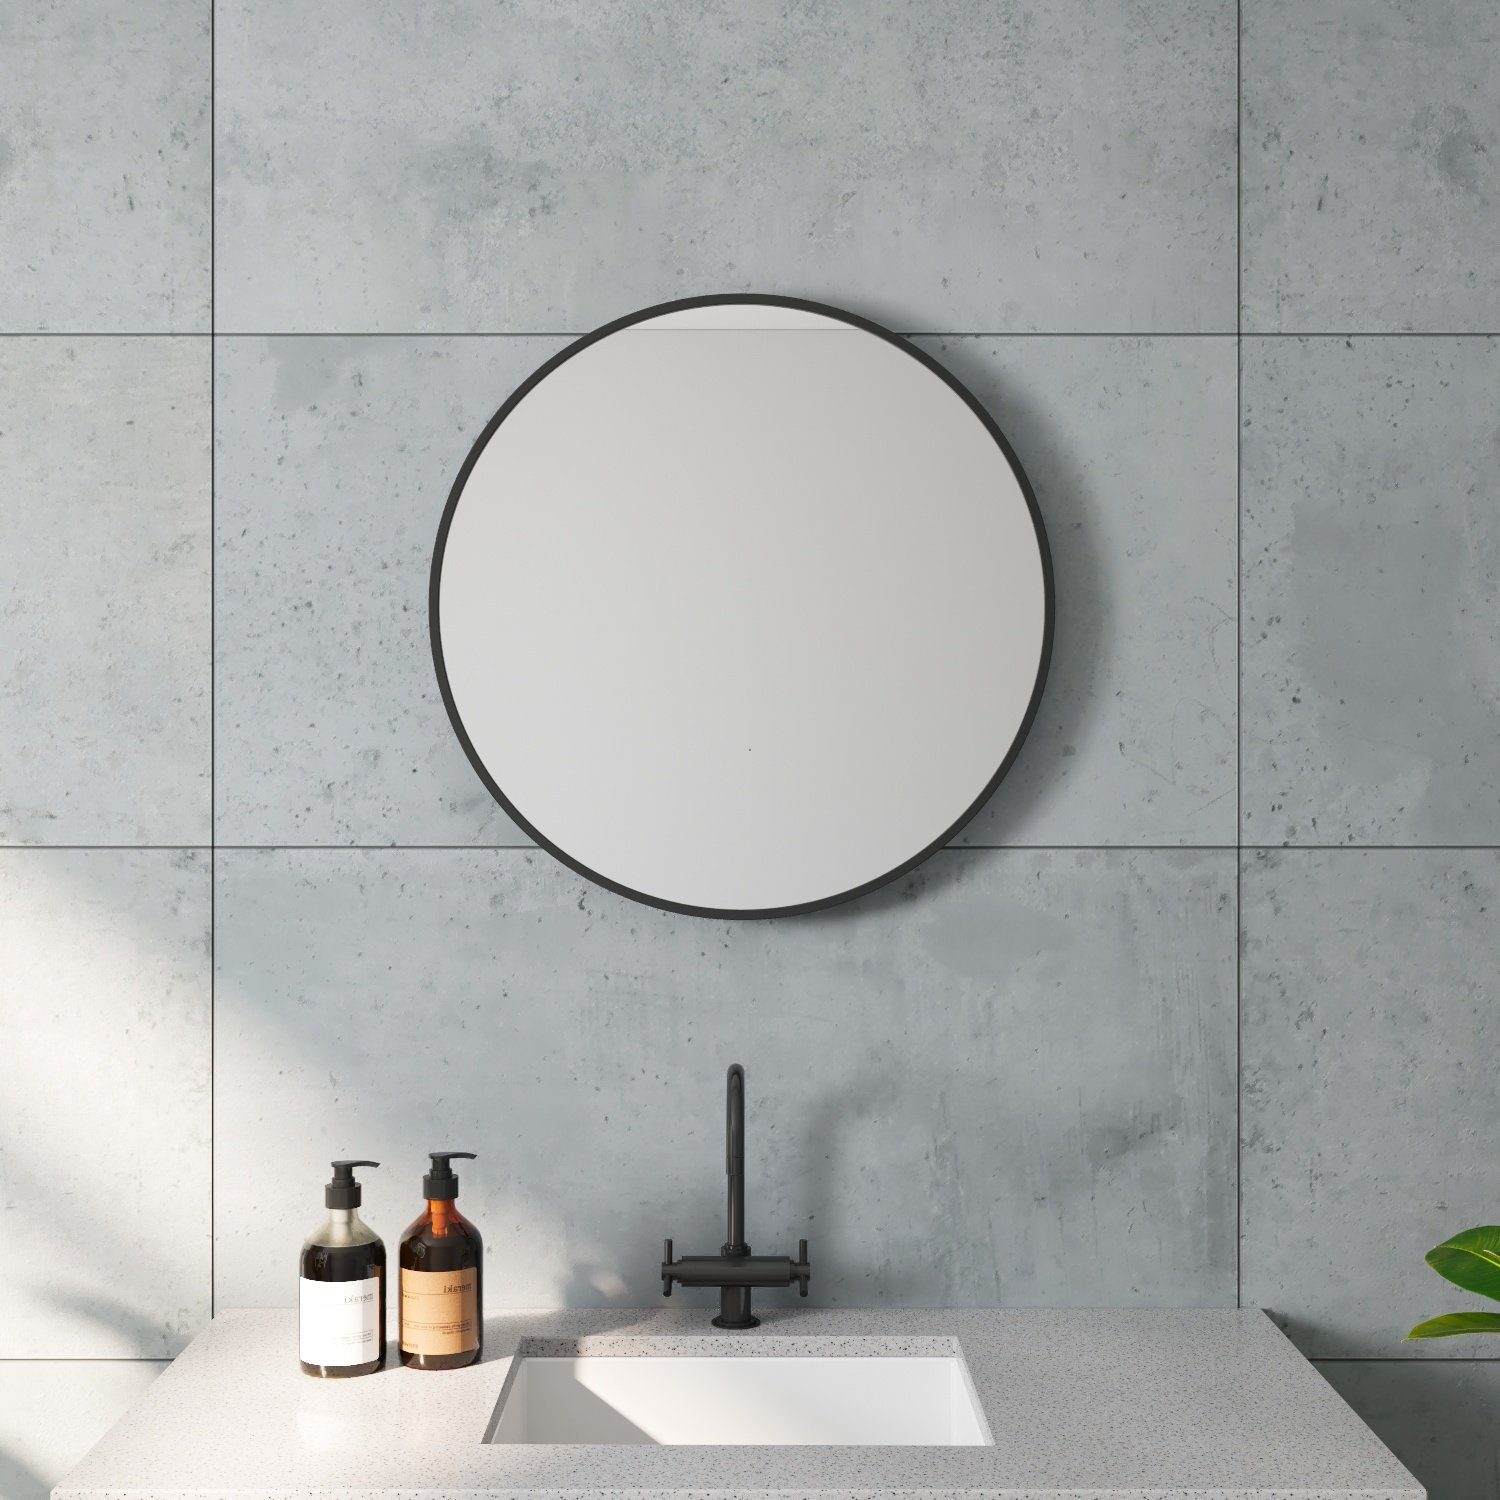 Top-Auswahl AQUALAVOS Badspiegel Rund Schminkspiegel Dekorative Wandspiegel Spiegel Badezimmer für 60cm